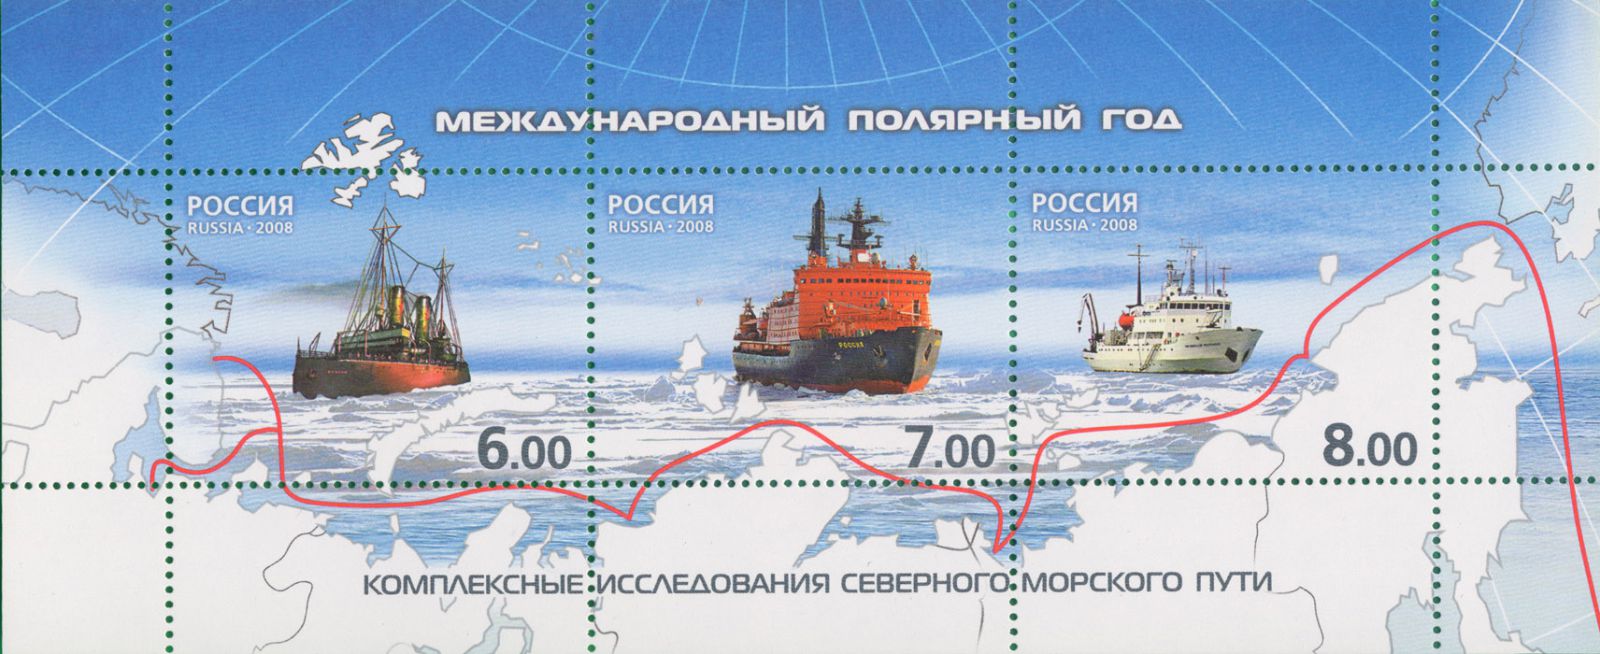 Международный полярный год 2007 - 2008